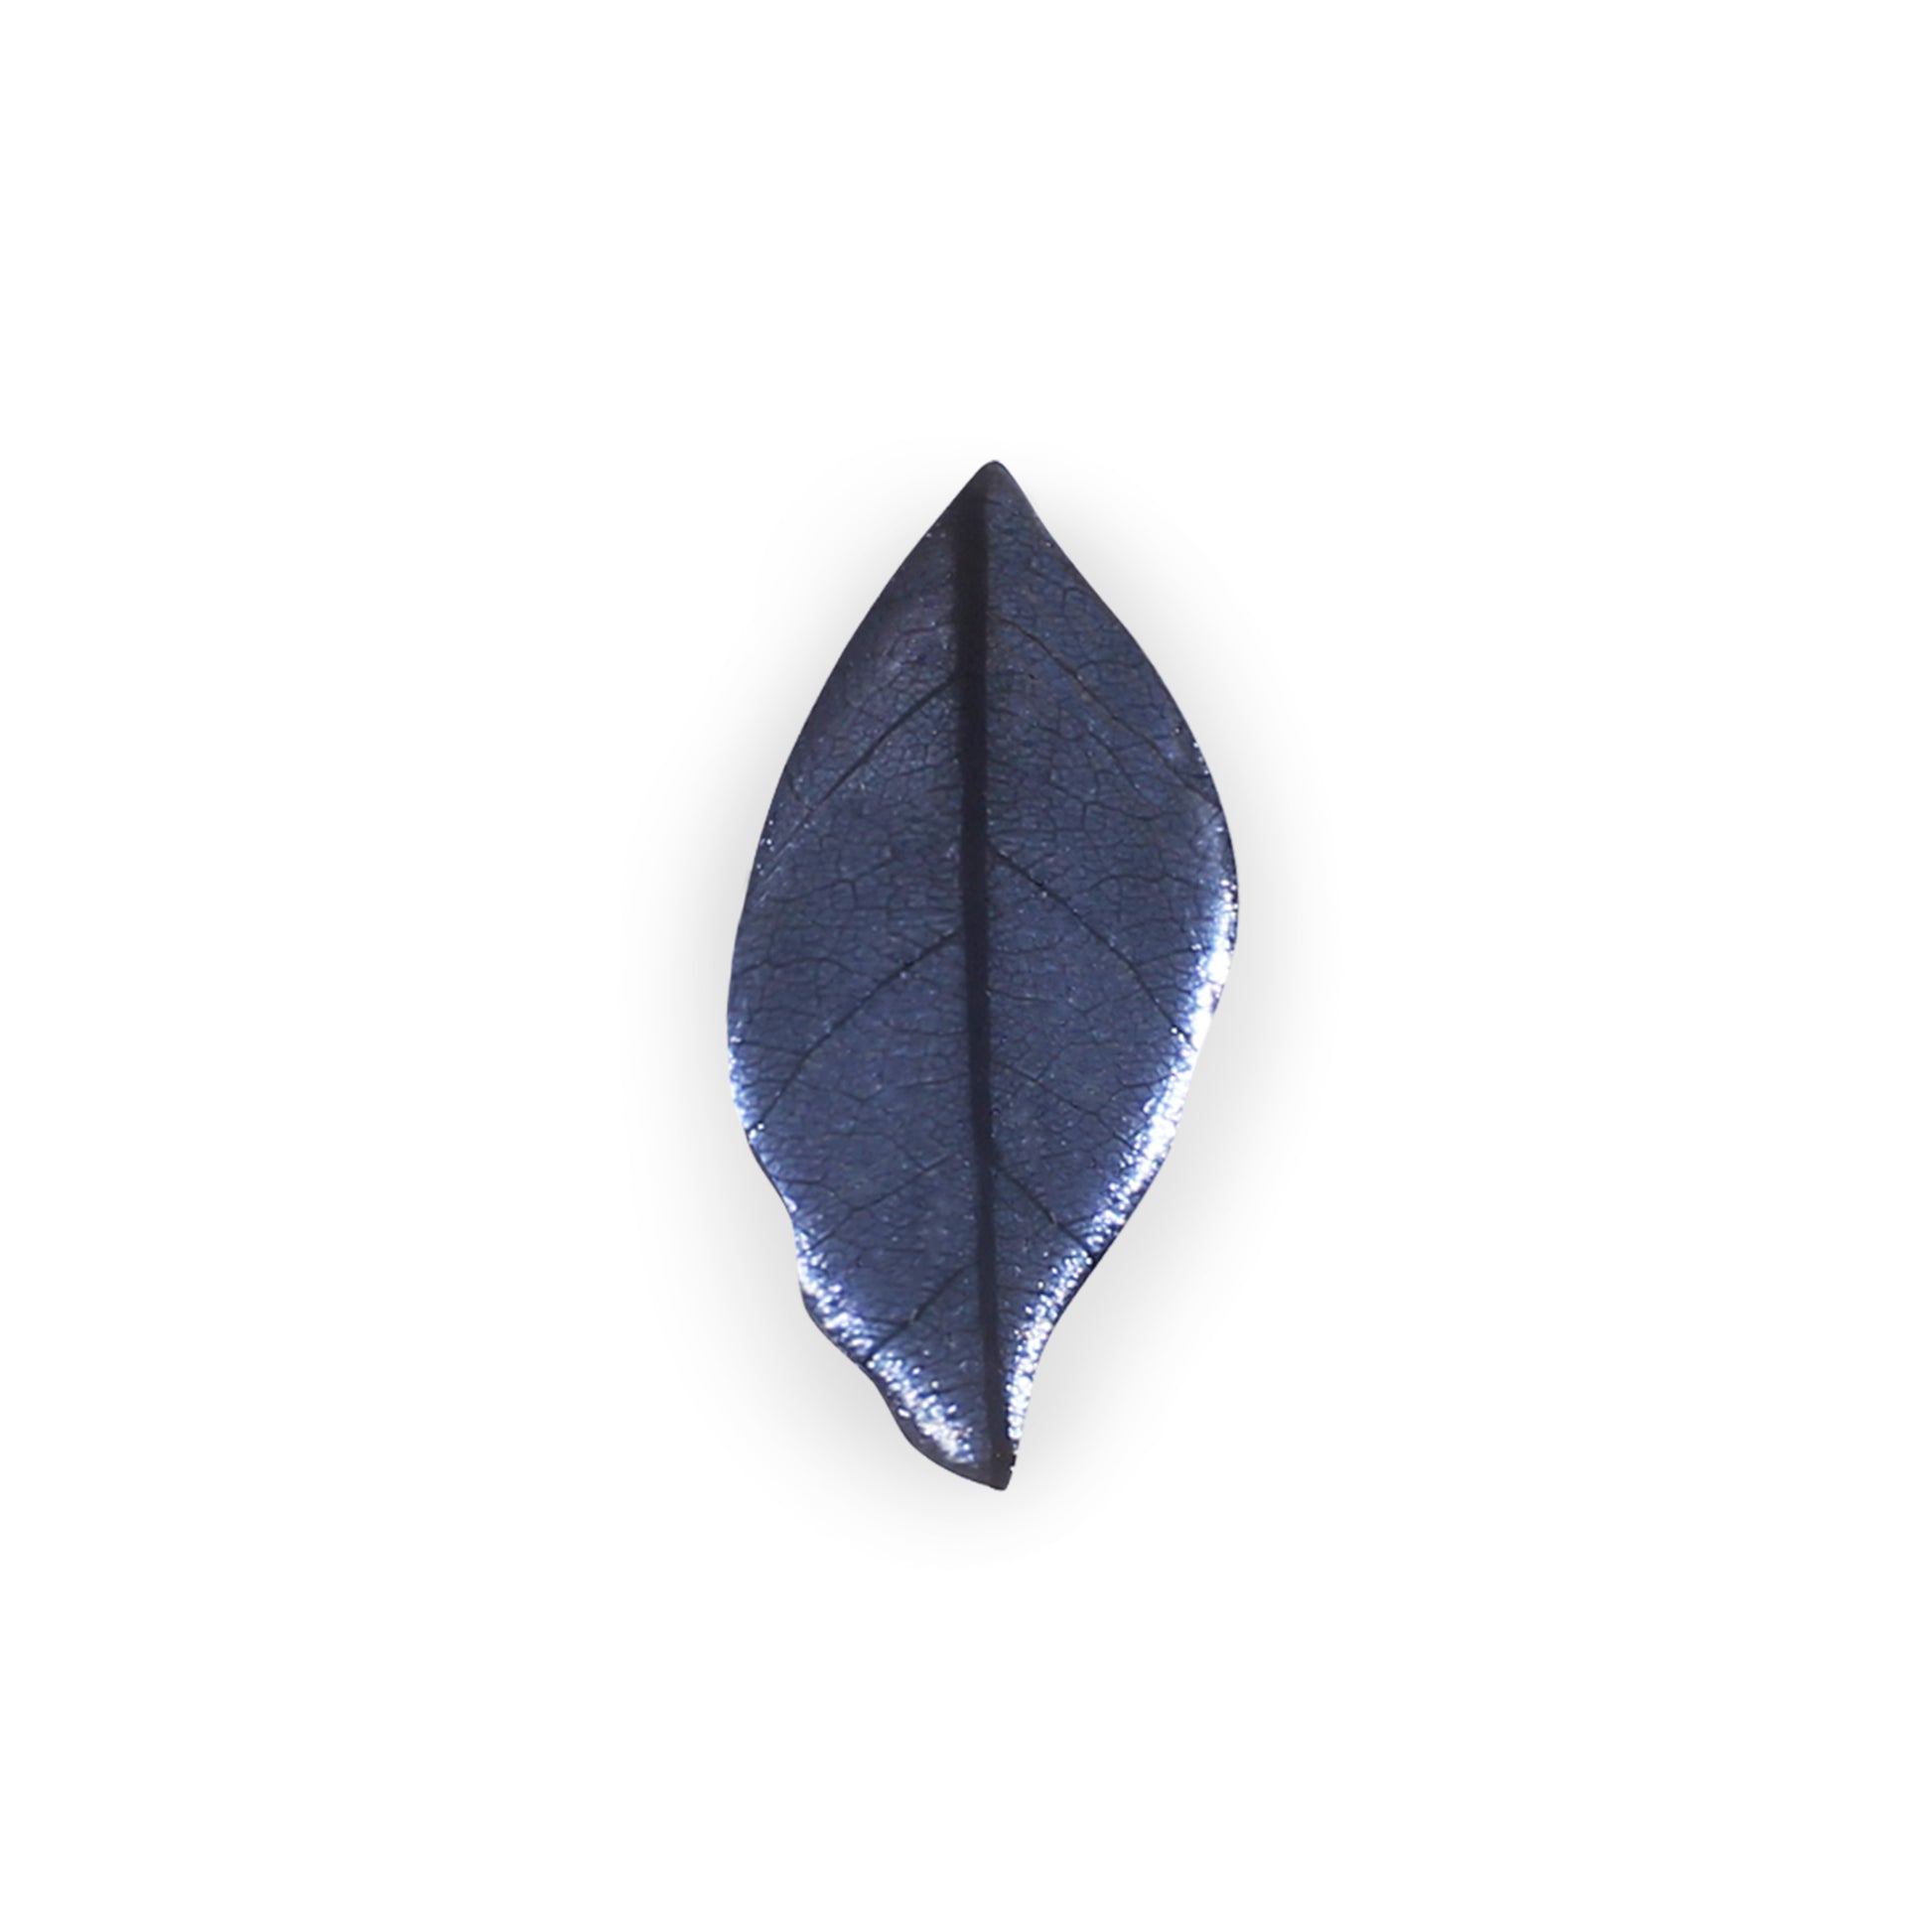 Lupin Skeletal Leaf Shiny Brooch